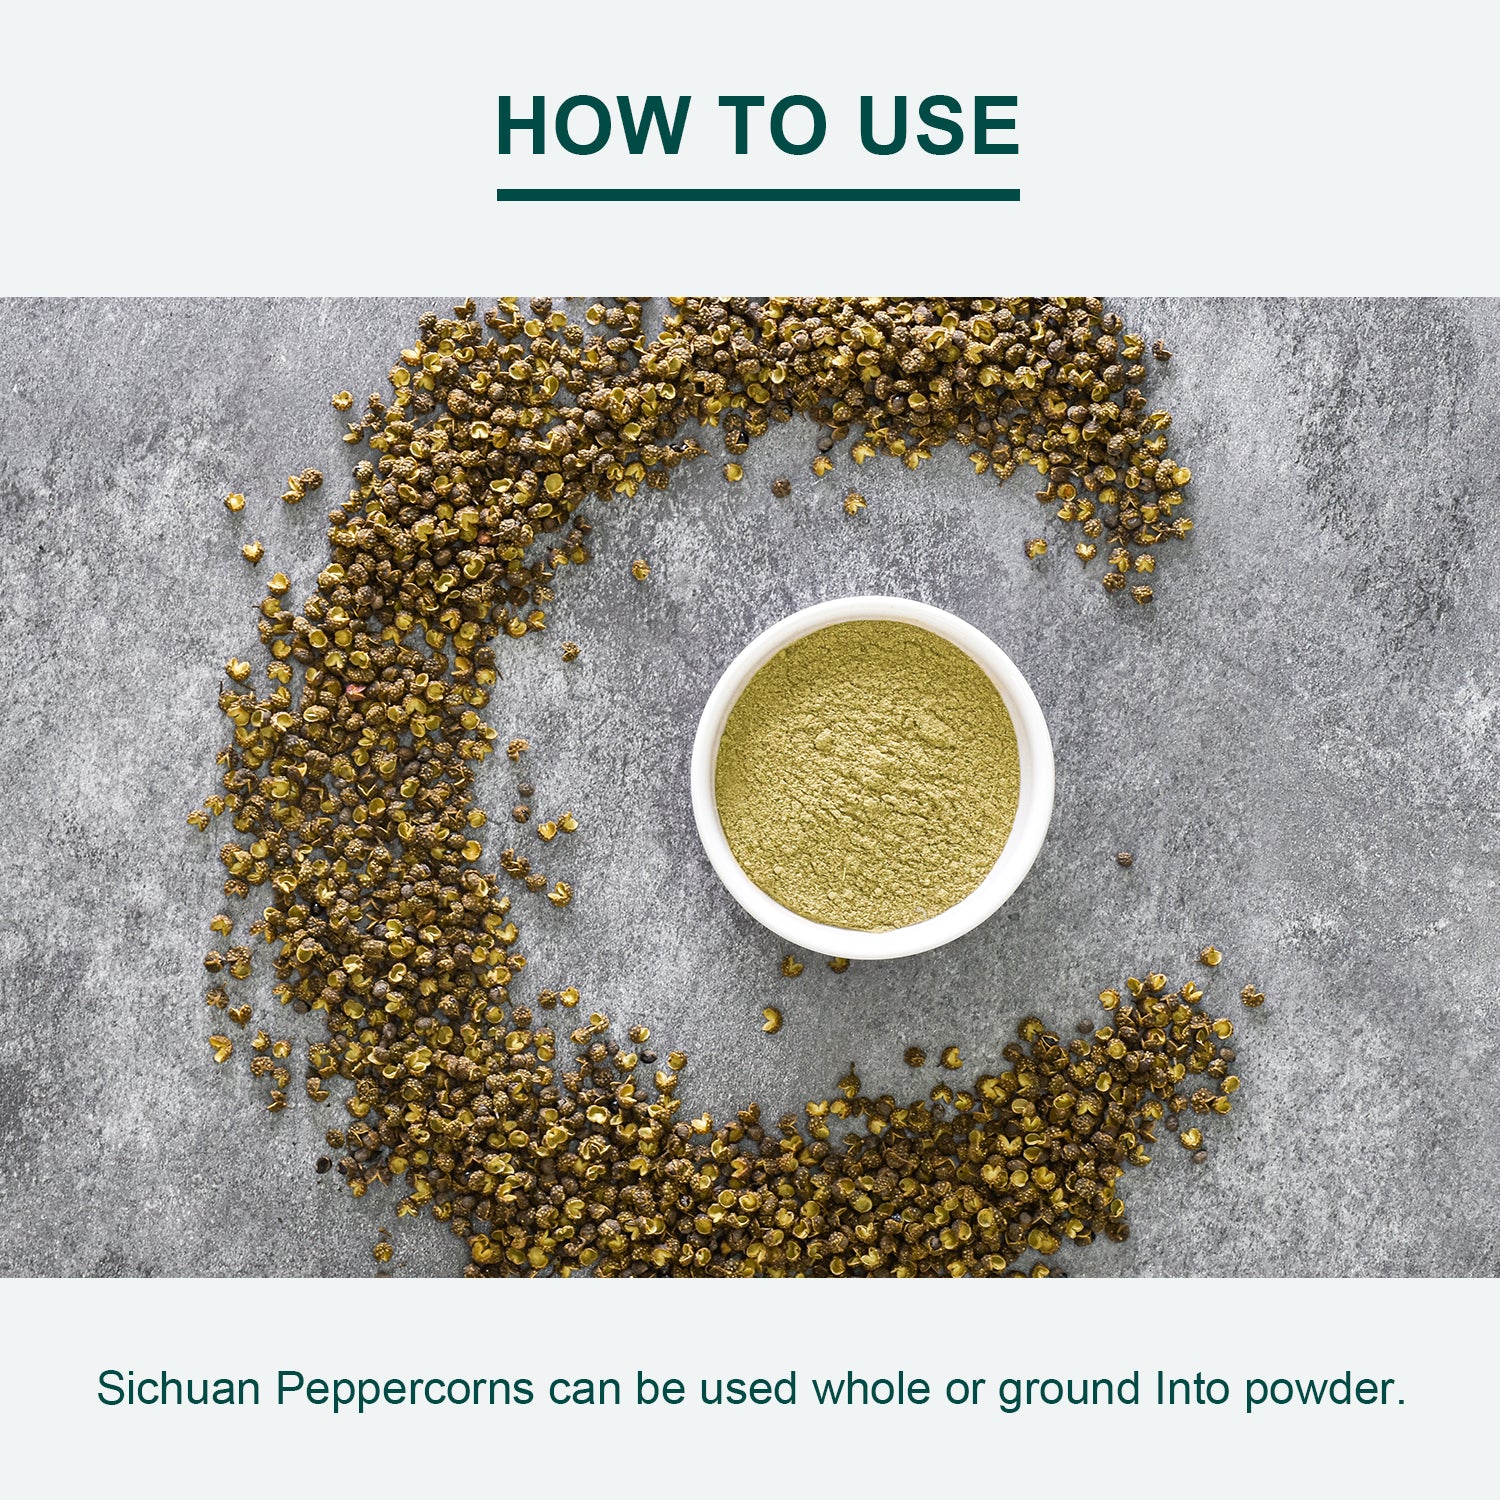 Green Sichuan Peppercorns